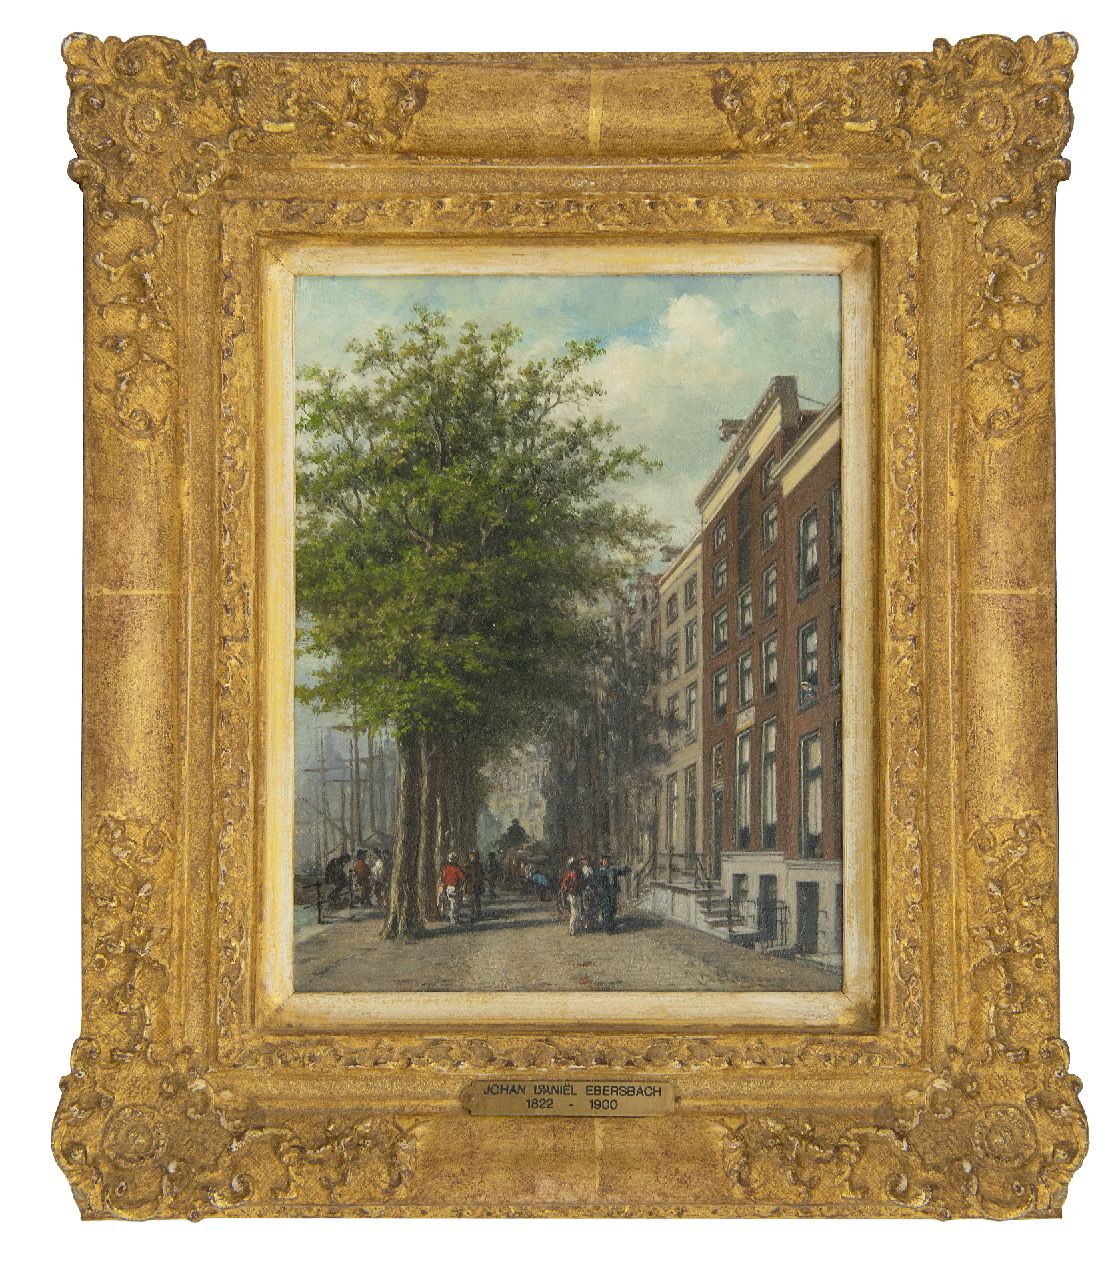 Ebersbach J.D.  | Johan Daniël Ebersbach | Schilderijen te koop aangeboden | Langs de Wolwevershaven, Dordrecht, olieverf op paneel 21,5 x 16,2 cm, gesigneerd rechtsonder